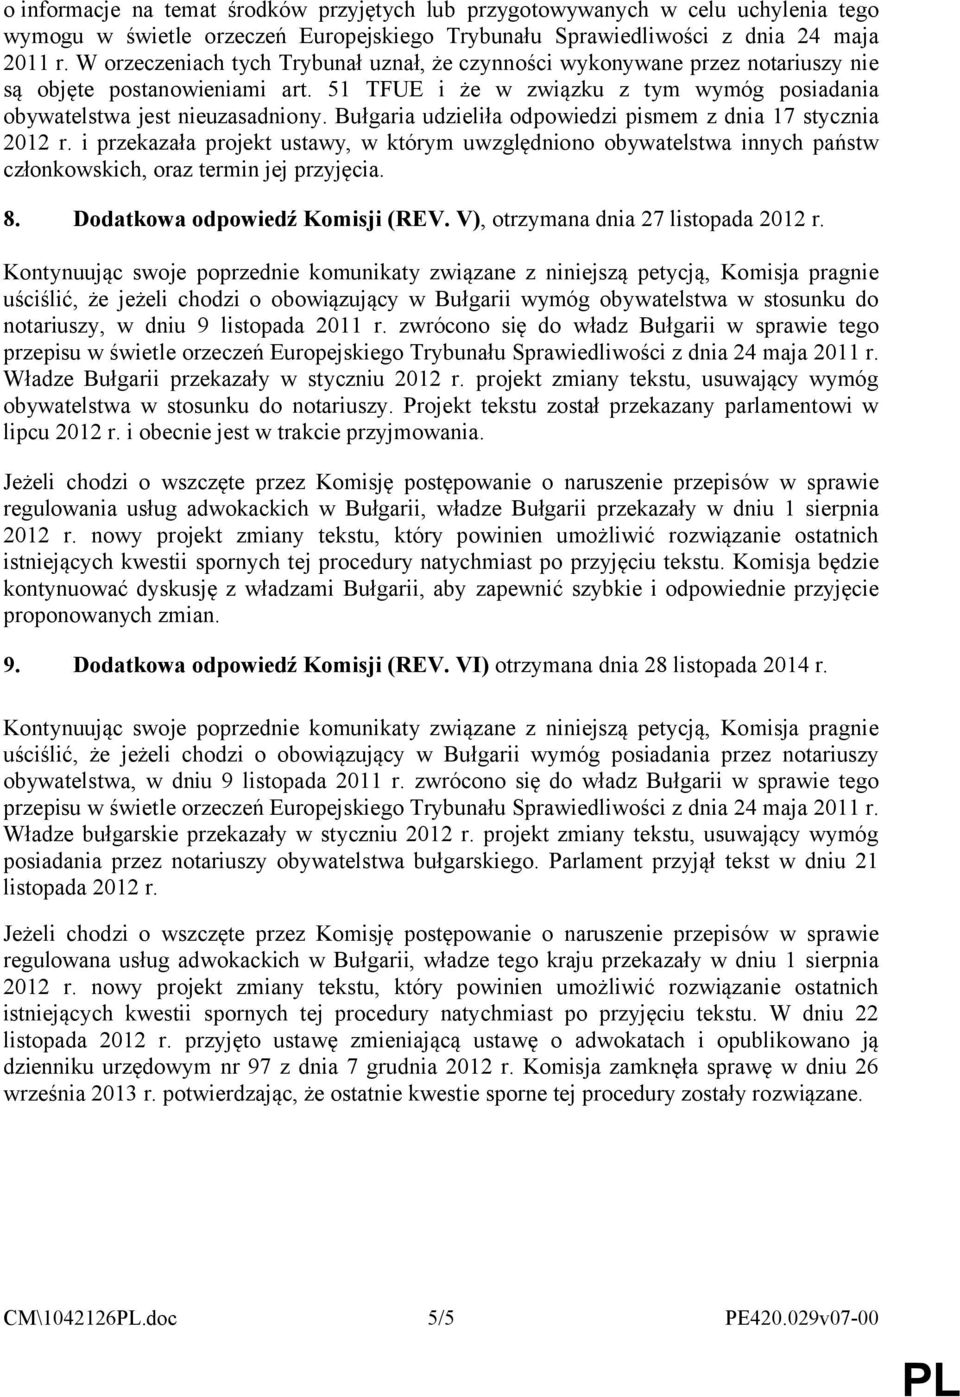 Bułgaria udzieliła odpowiedzi pismem z dnia 17 stycznia 2012 r. i przekazała projekt ustawy, w którym uwzględniono obywatelstwa innych państw członkowskich, oraz termin jej przyjęcia. 8.